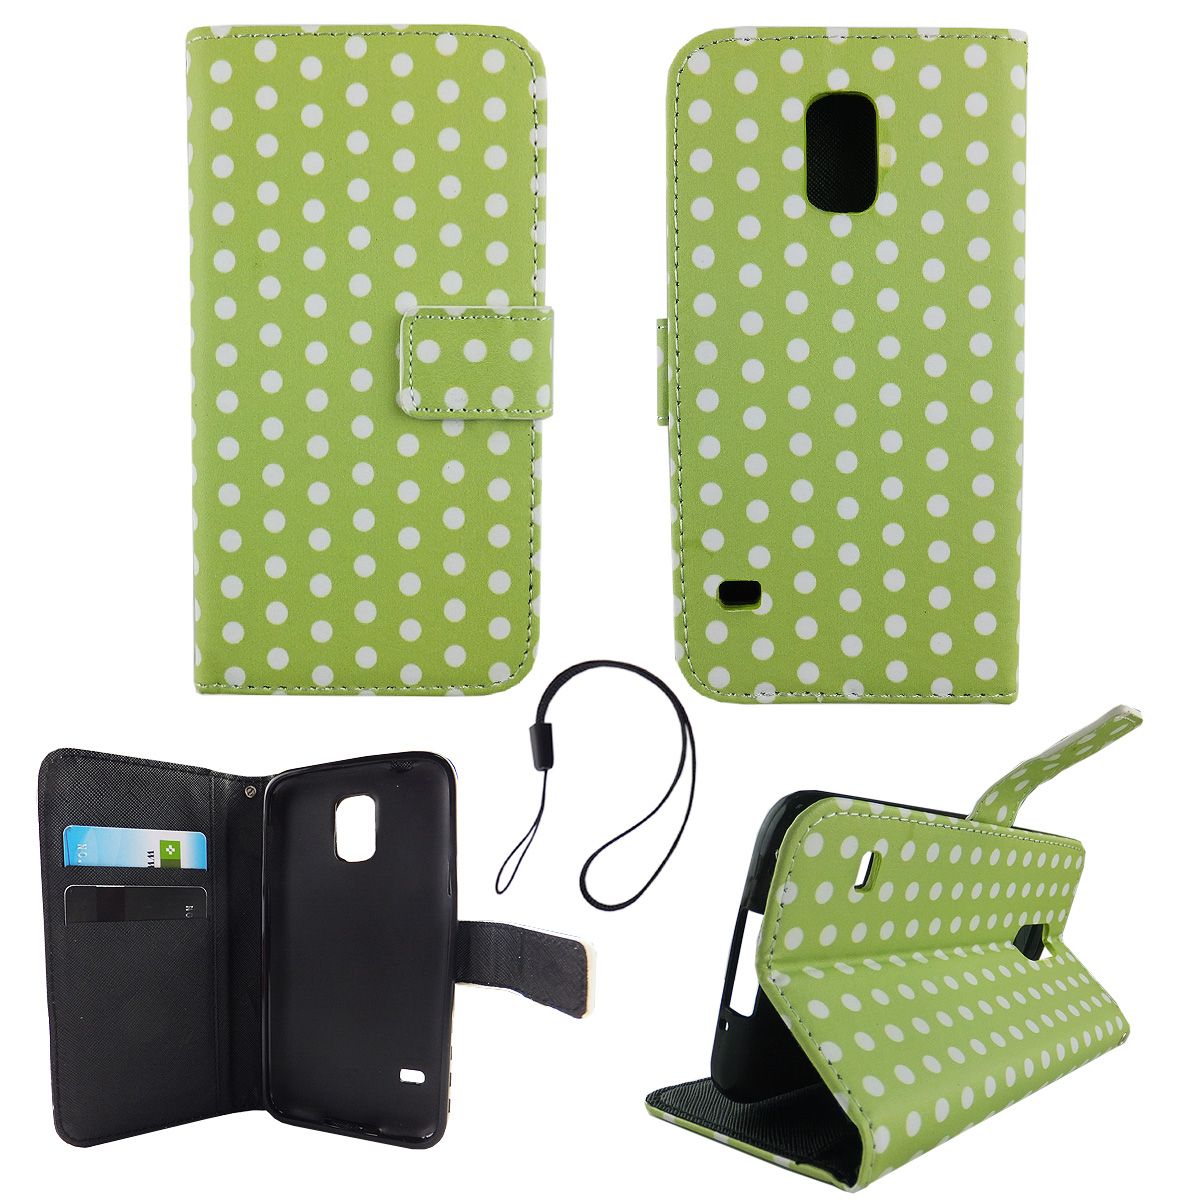 König Funda tipo cartera de piel sintética para Samsung Galaxy S5 / S5 Neo - Funda con tapa en diseño verde / blanco con ranura para tarjetas y función atril